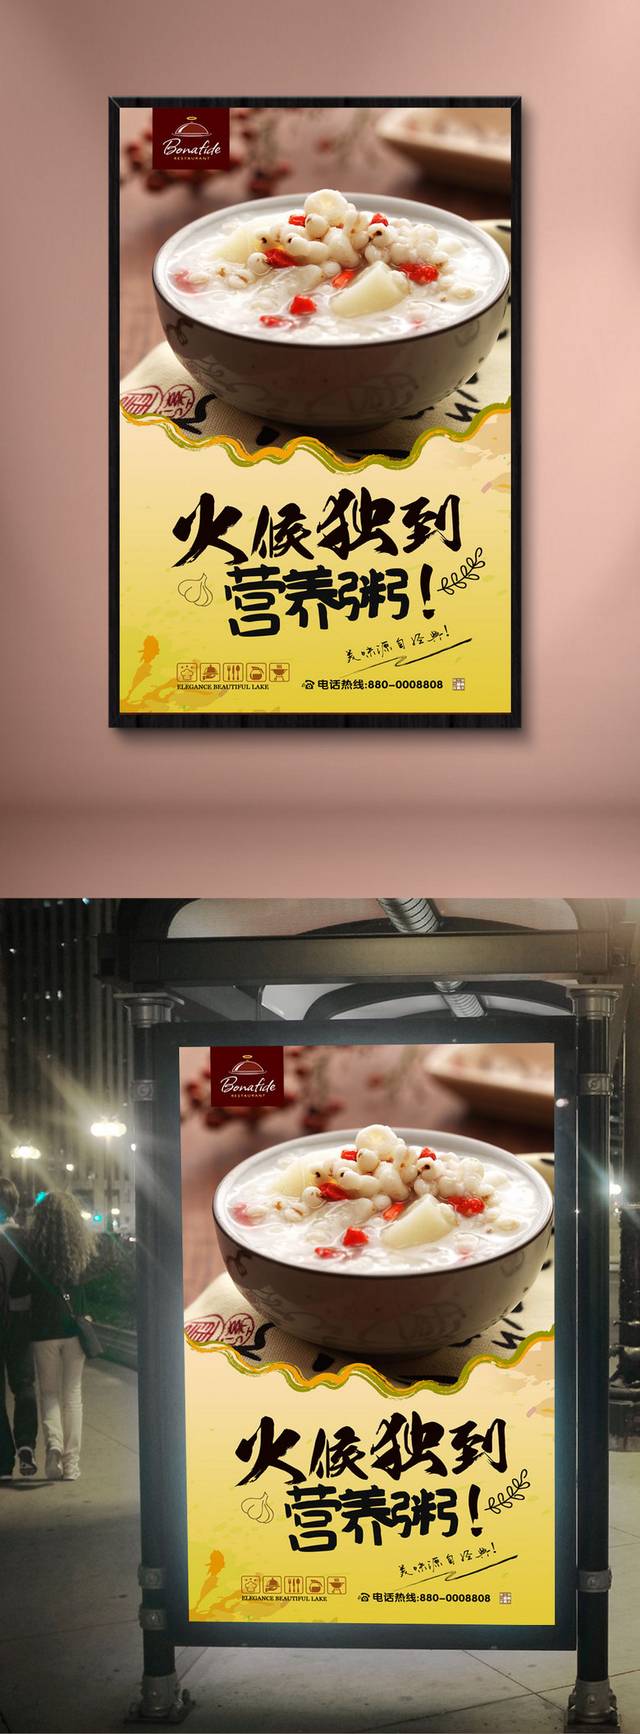 粥早餐店宣传海报设计